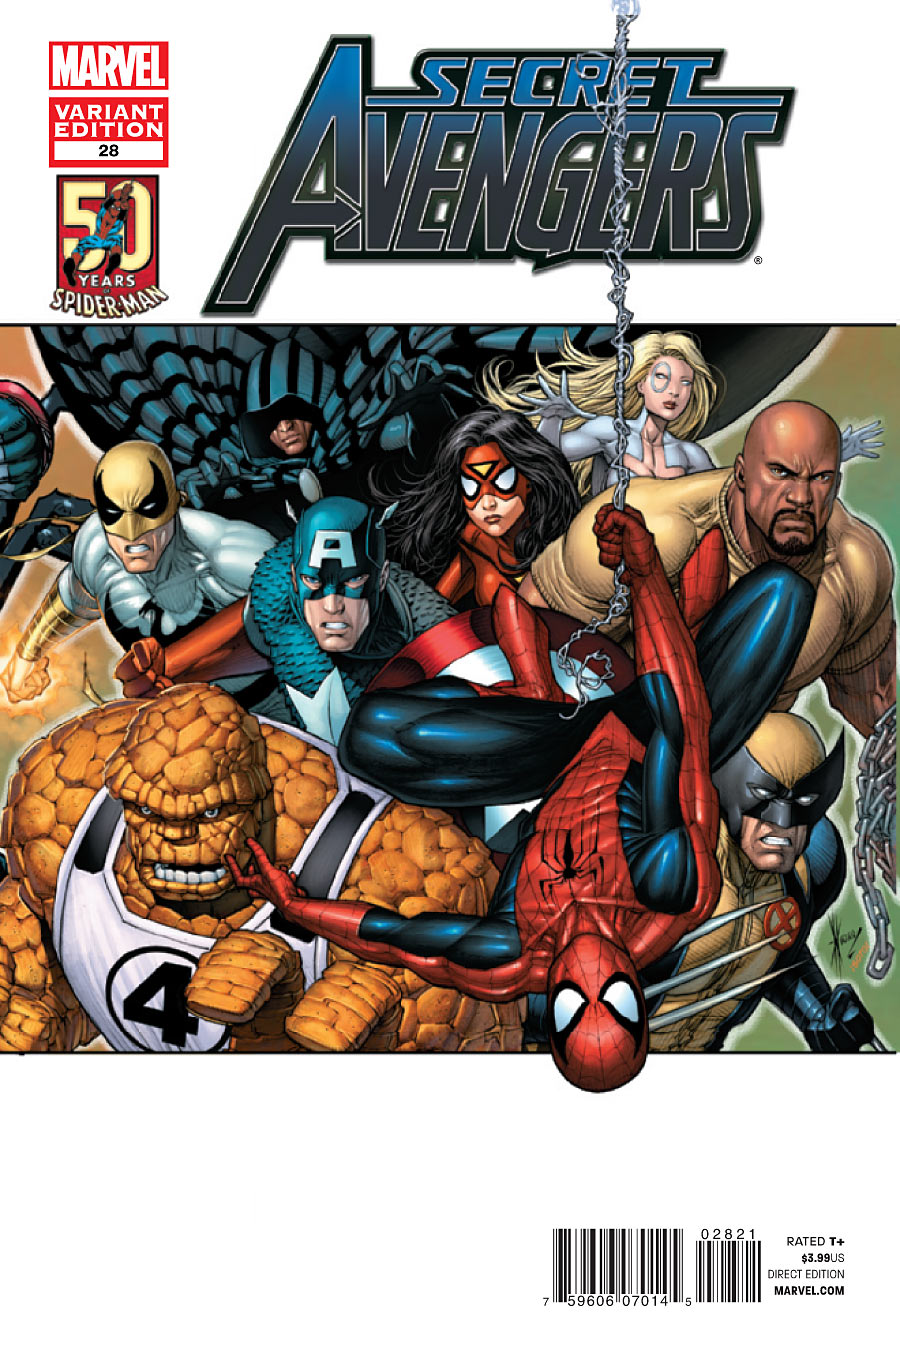 Avengers #28 Captain America Captain Marvel Team Up Variant